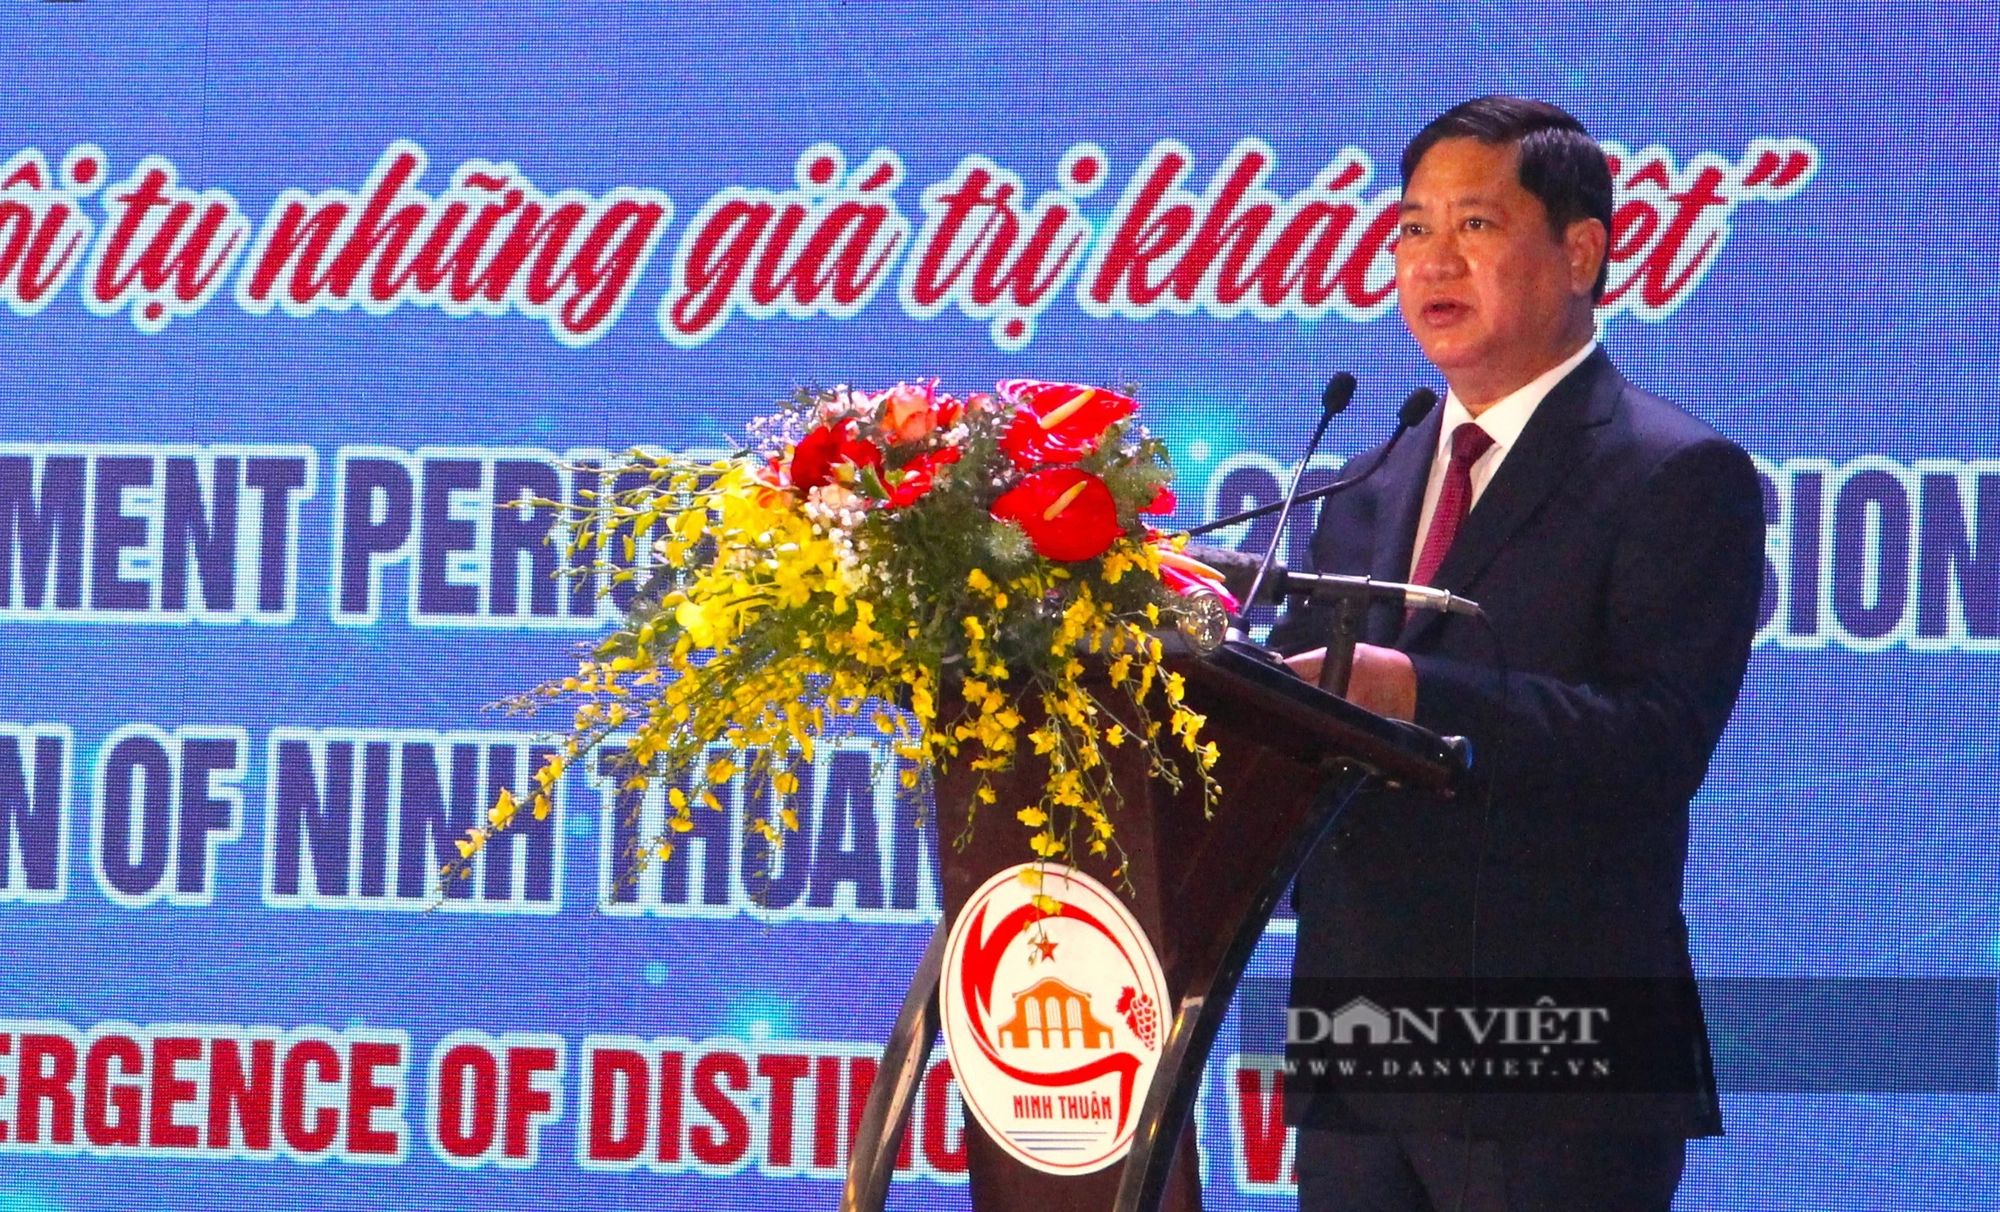 Thủ tướng Phạm Minh Chính: Ninh Thuận phải trở thành nơi đáng để đầu tư, đáng để cống hiến và đáng sống- Ảnh 4.